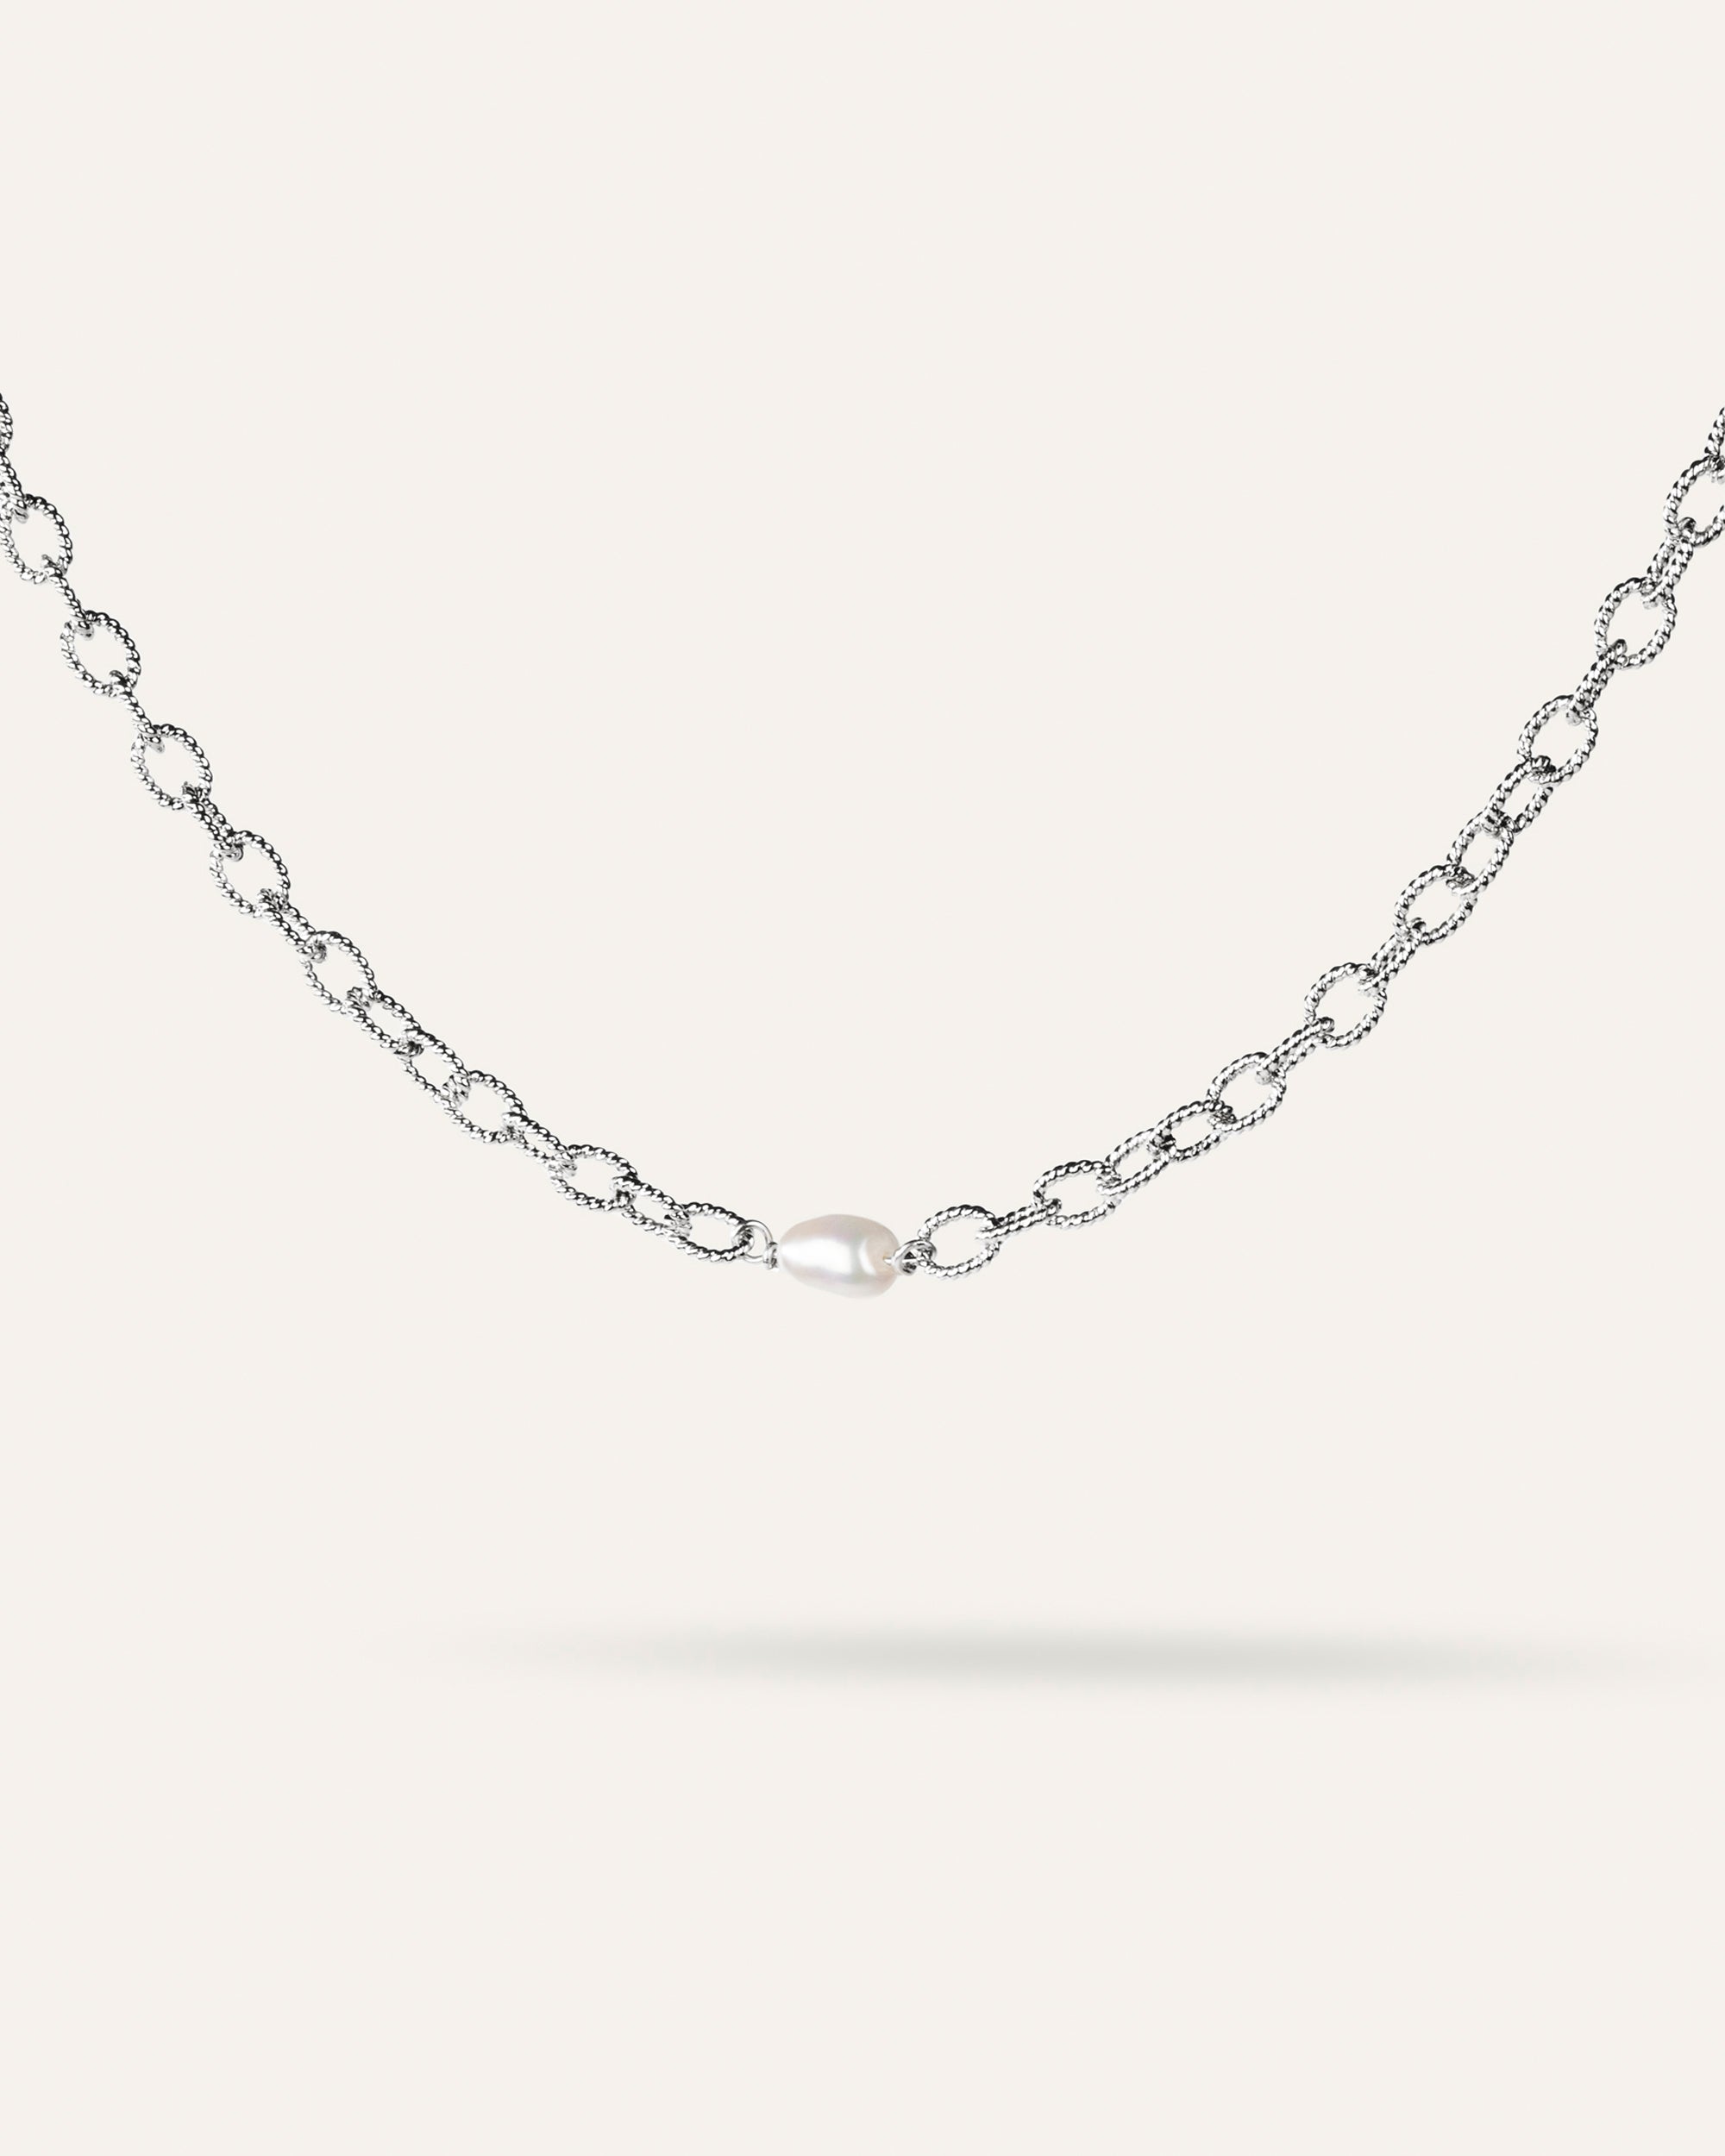 Collier ras de cou en argent massif 925 composé d'une chaîne ovale facetté avec une perle de culture made in France.